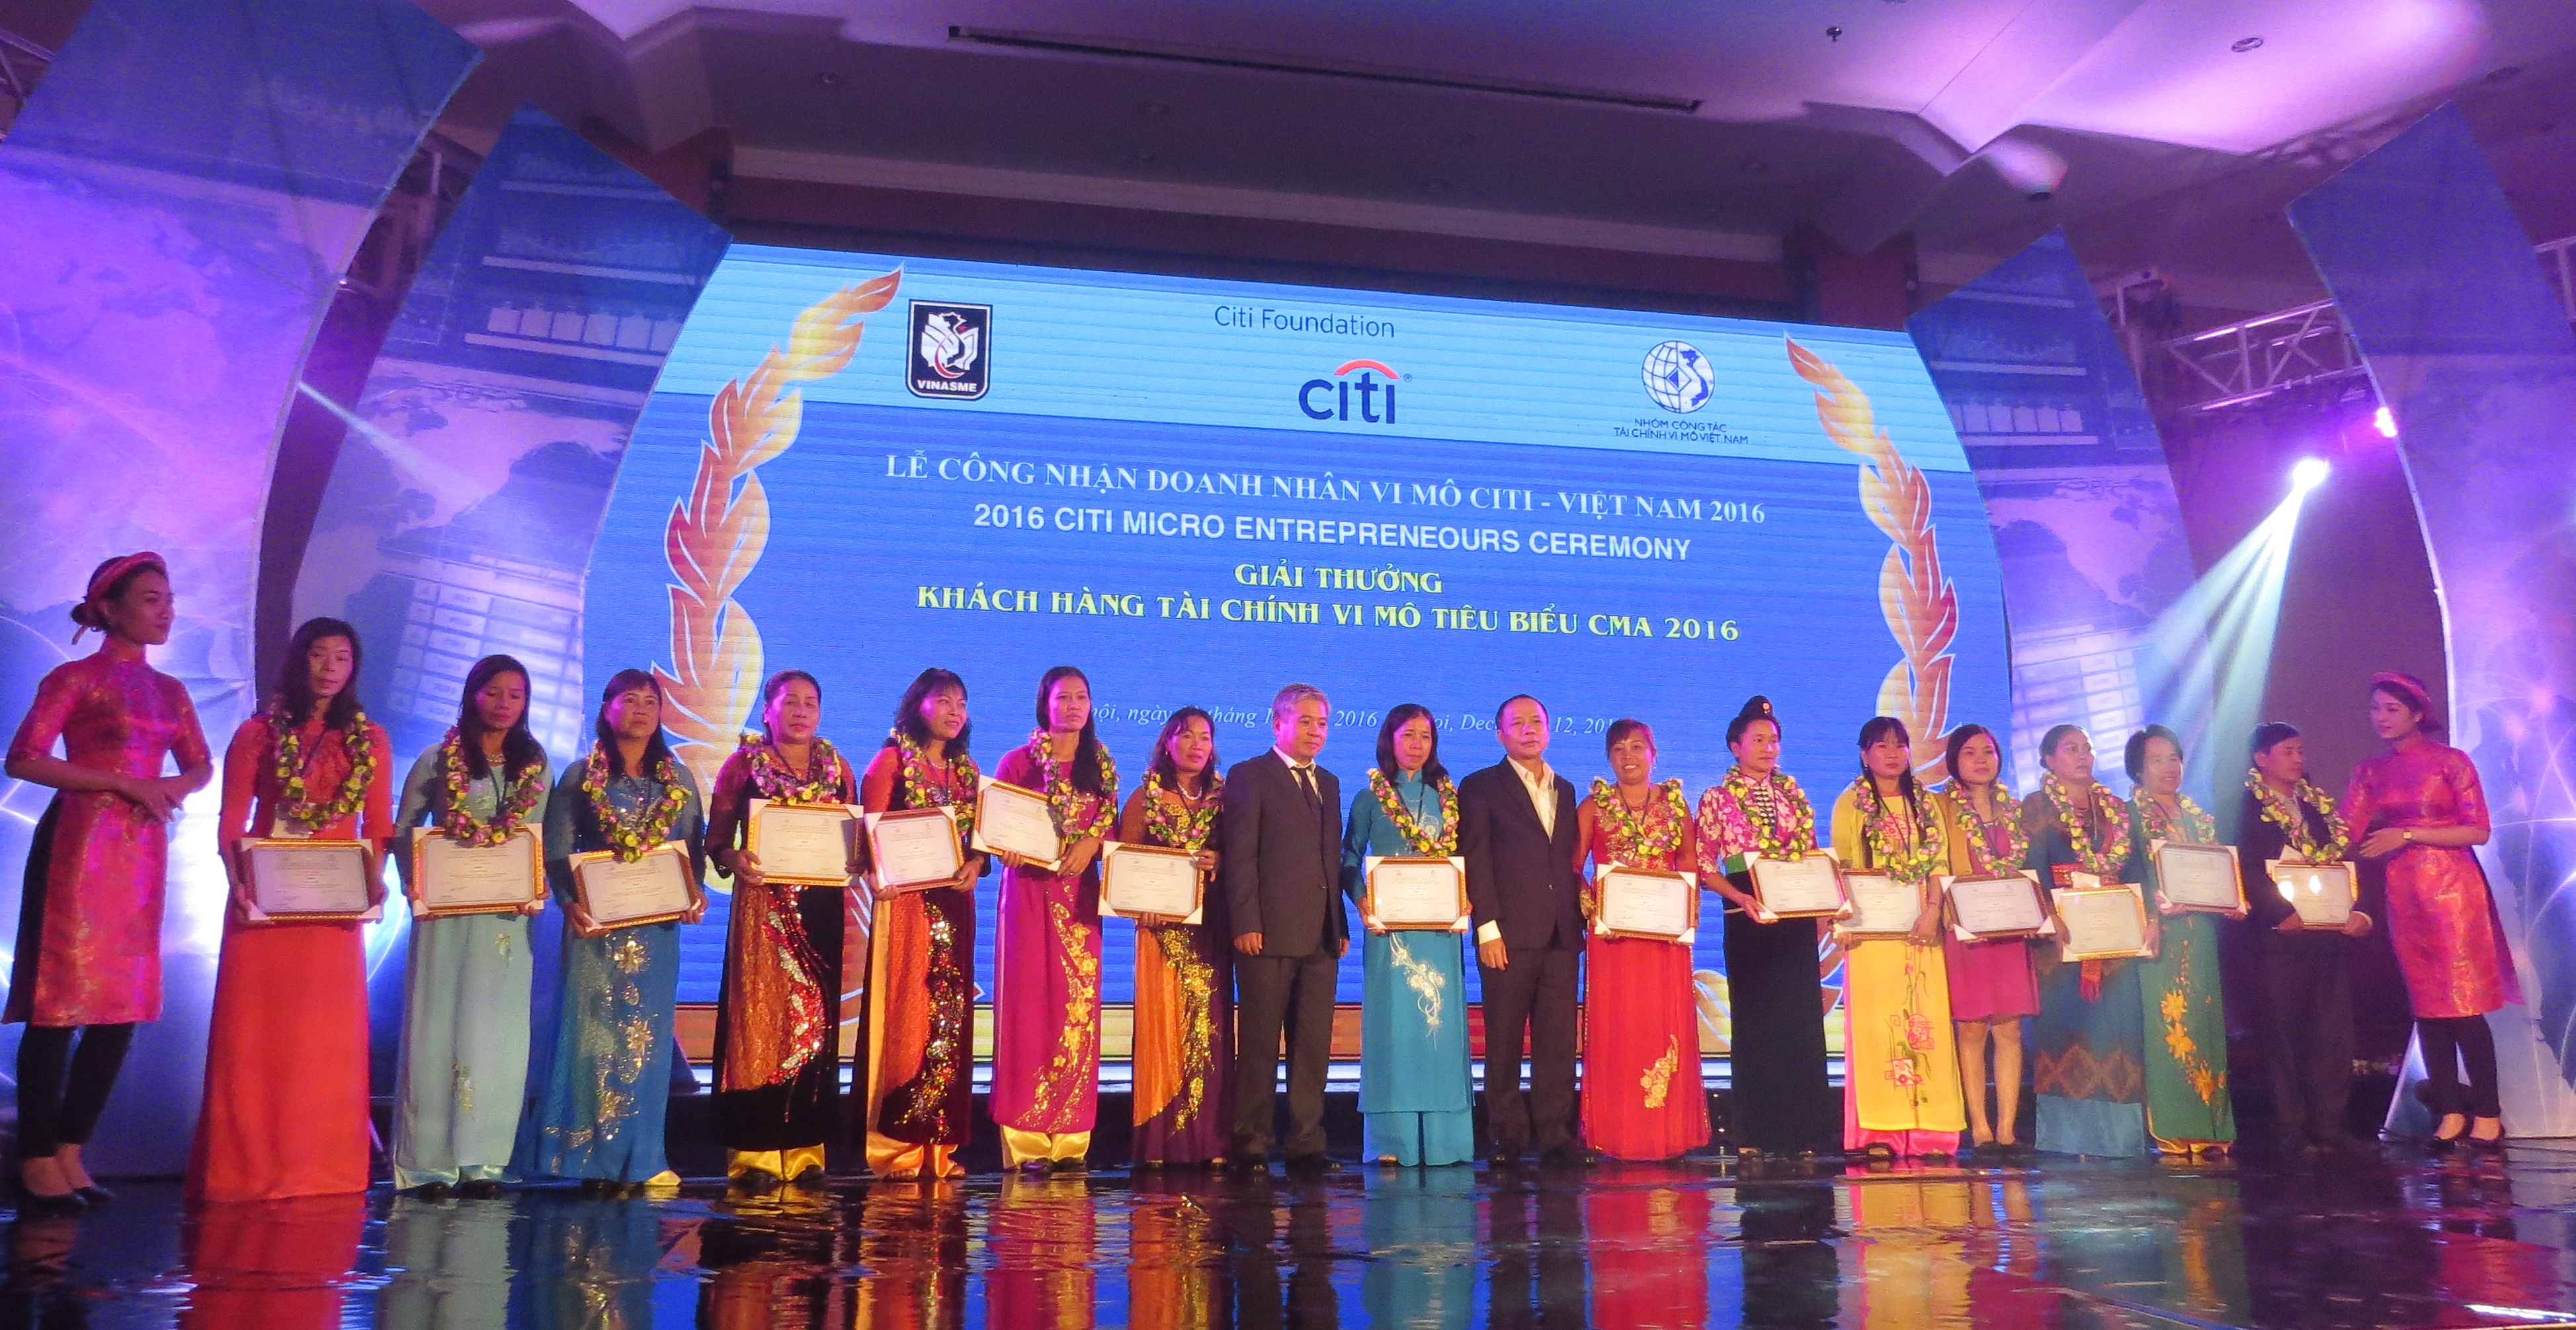 CFRC vinh dự có hai thành viên nhận giải doanh nhân vi mô Citi 2016